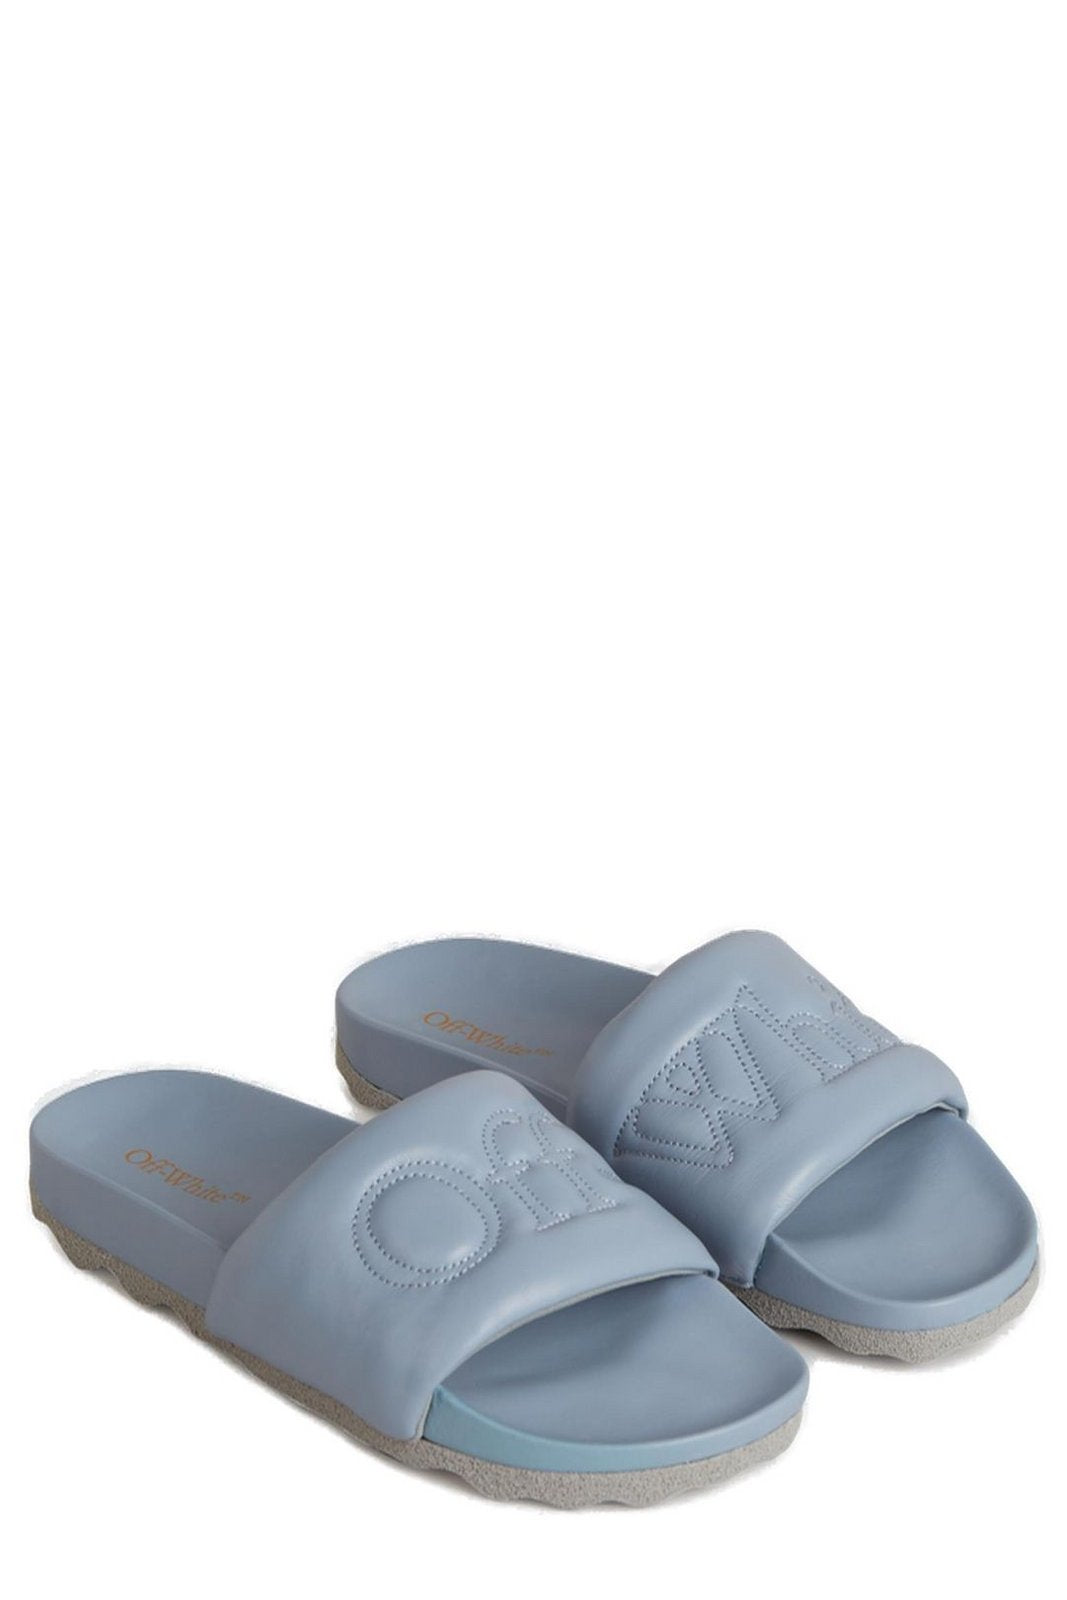 Off-White Open Toe Slip-On Sandals